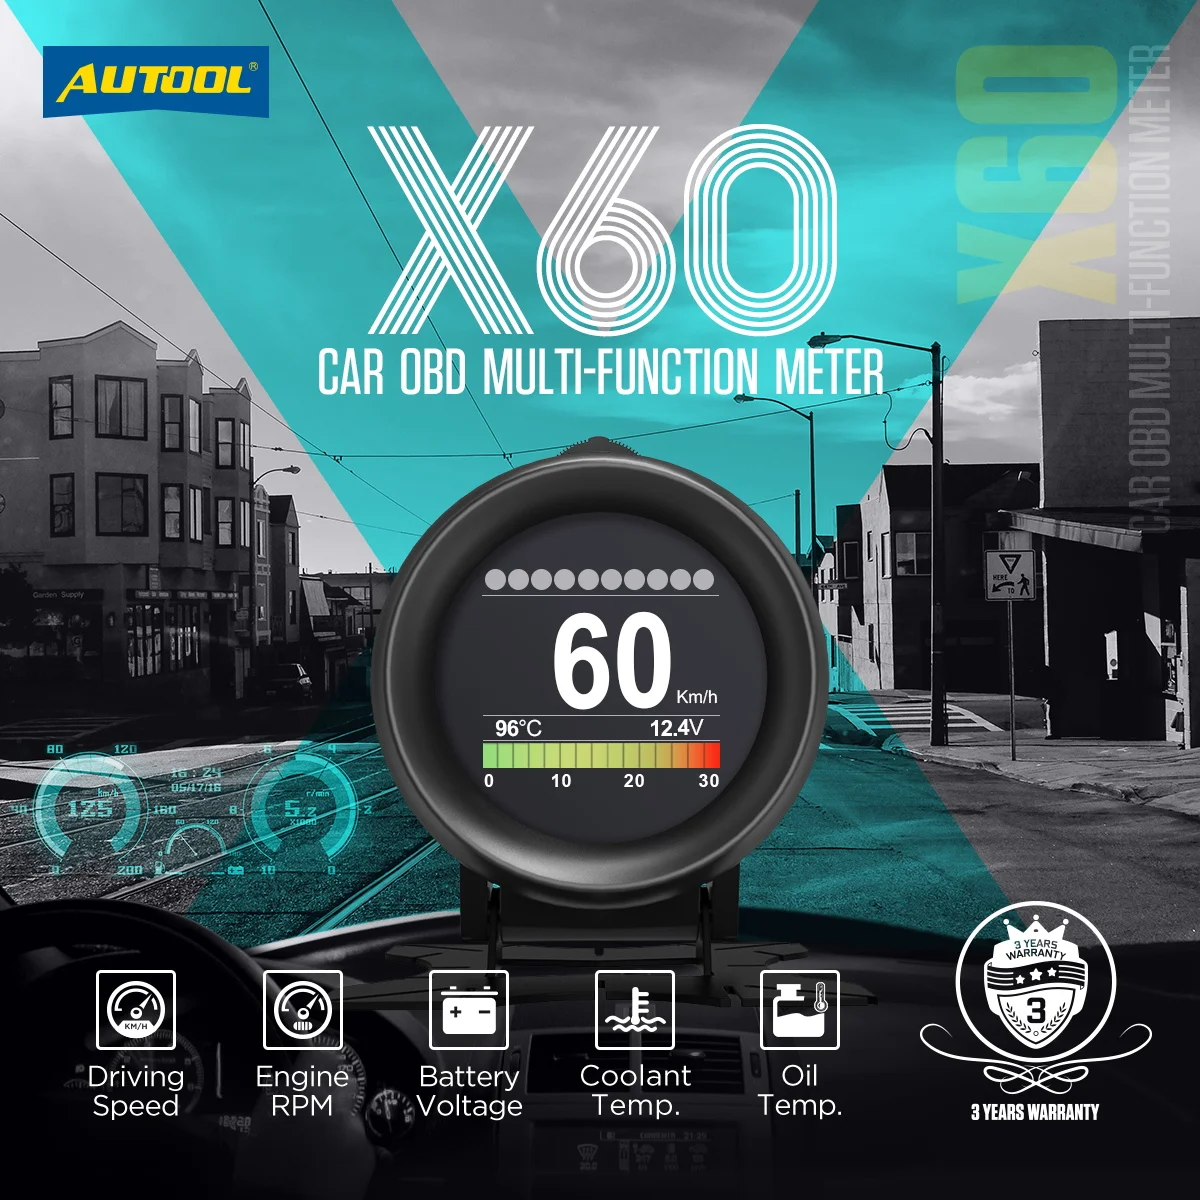 compteur numérique intelligent X60 HUD pour voiture, alarme multifonction,  jauge de température, tension, compteur de vitesse, Code'erreur clair